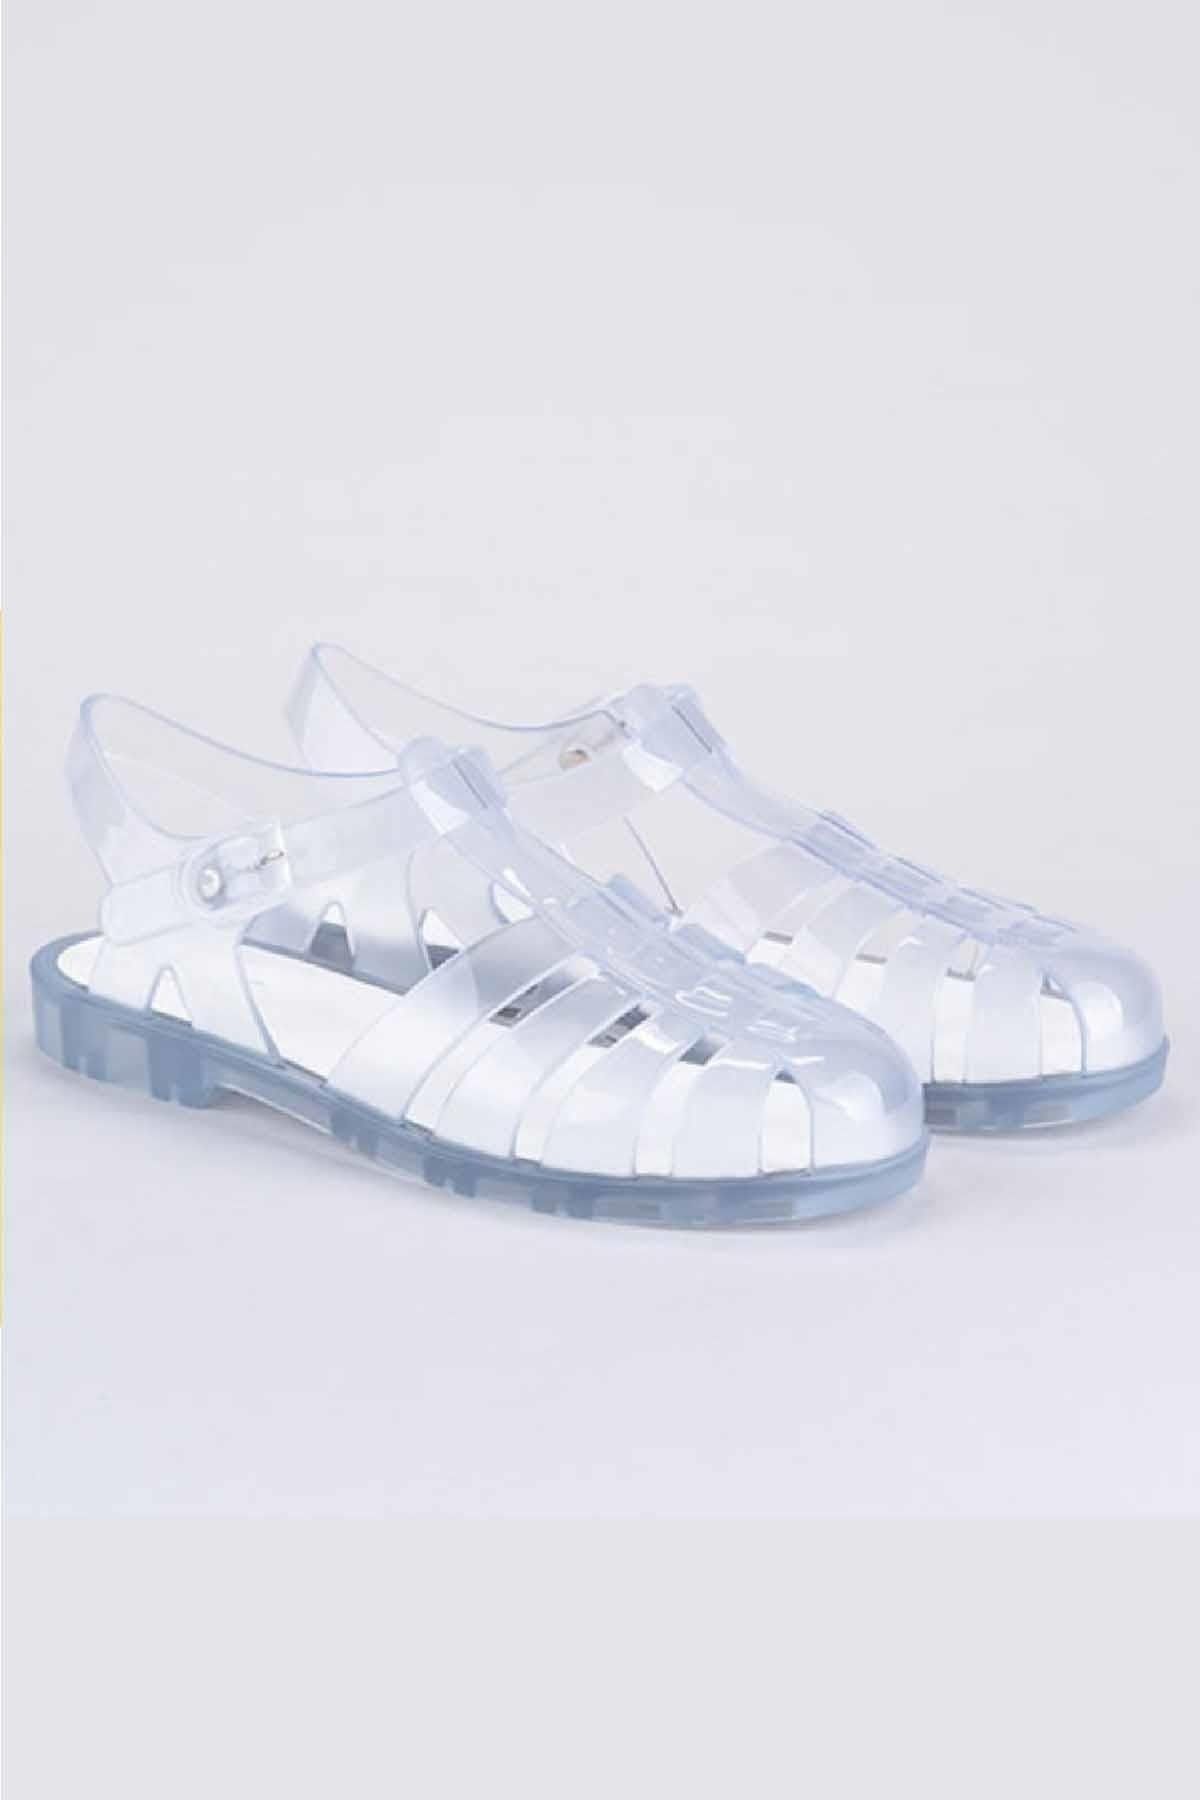 IGOR Biarritz Cristal Çocuk Sandalet Ayakkabı S10261-070Transparen